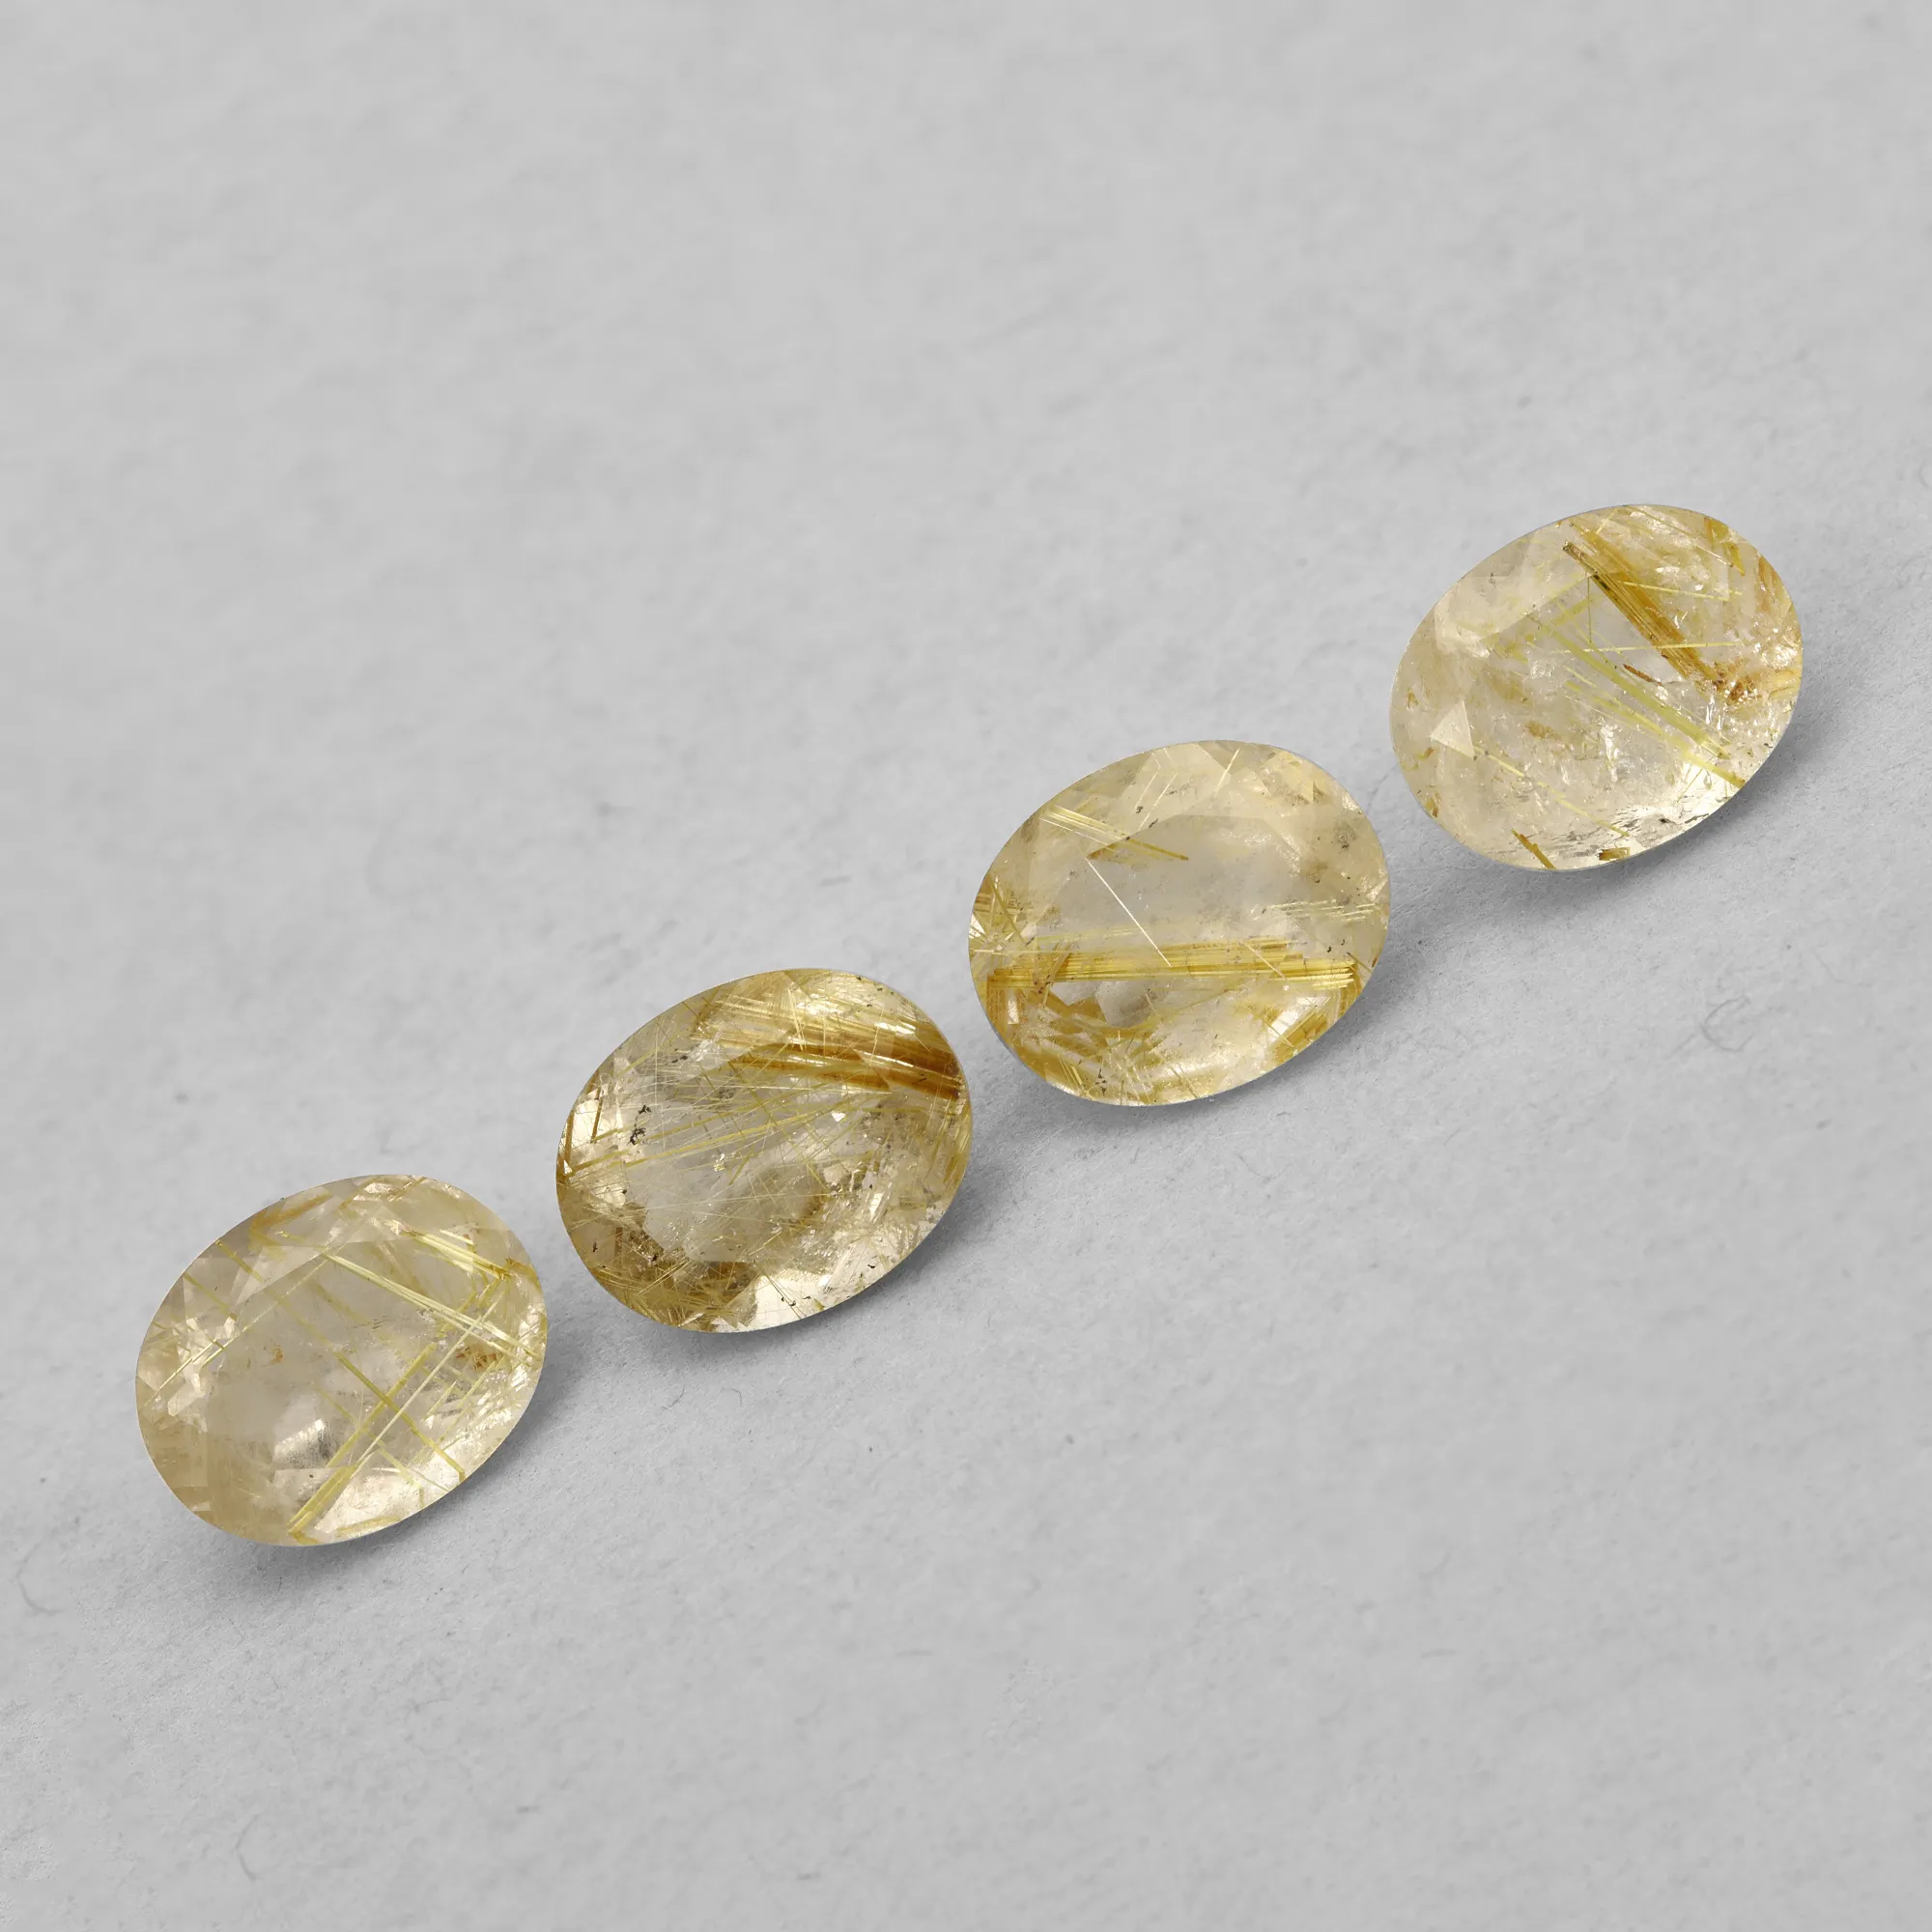 Pietra rutilica naturale ovale 10x8mm taglio brillante pietra preziosa sciolta dorata di alta qualità per la creazione di gioielli